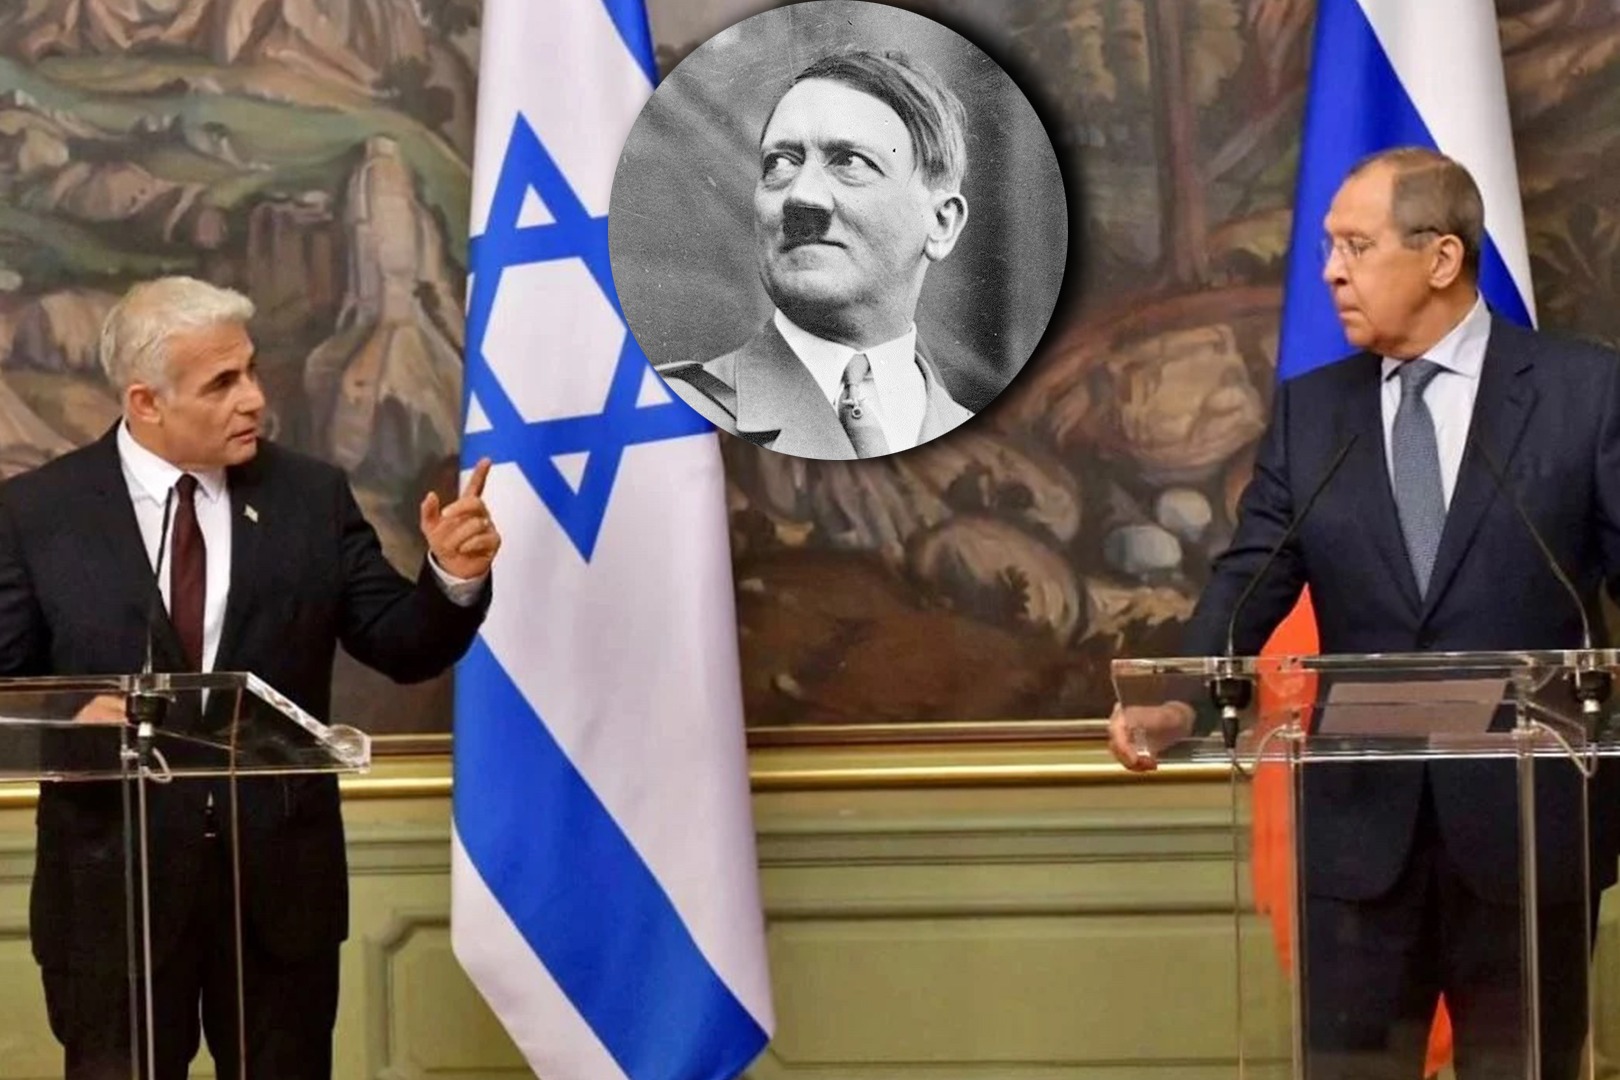 「希特拉有猶太人血統」 俄外長為何一句激嬲以色列